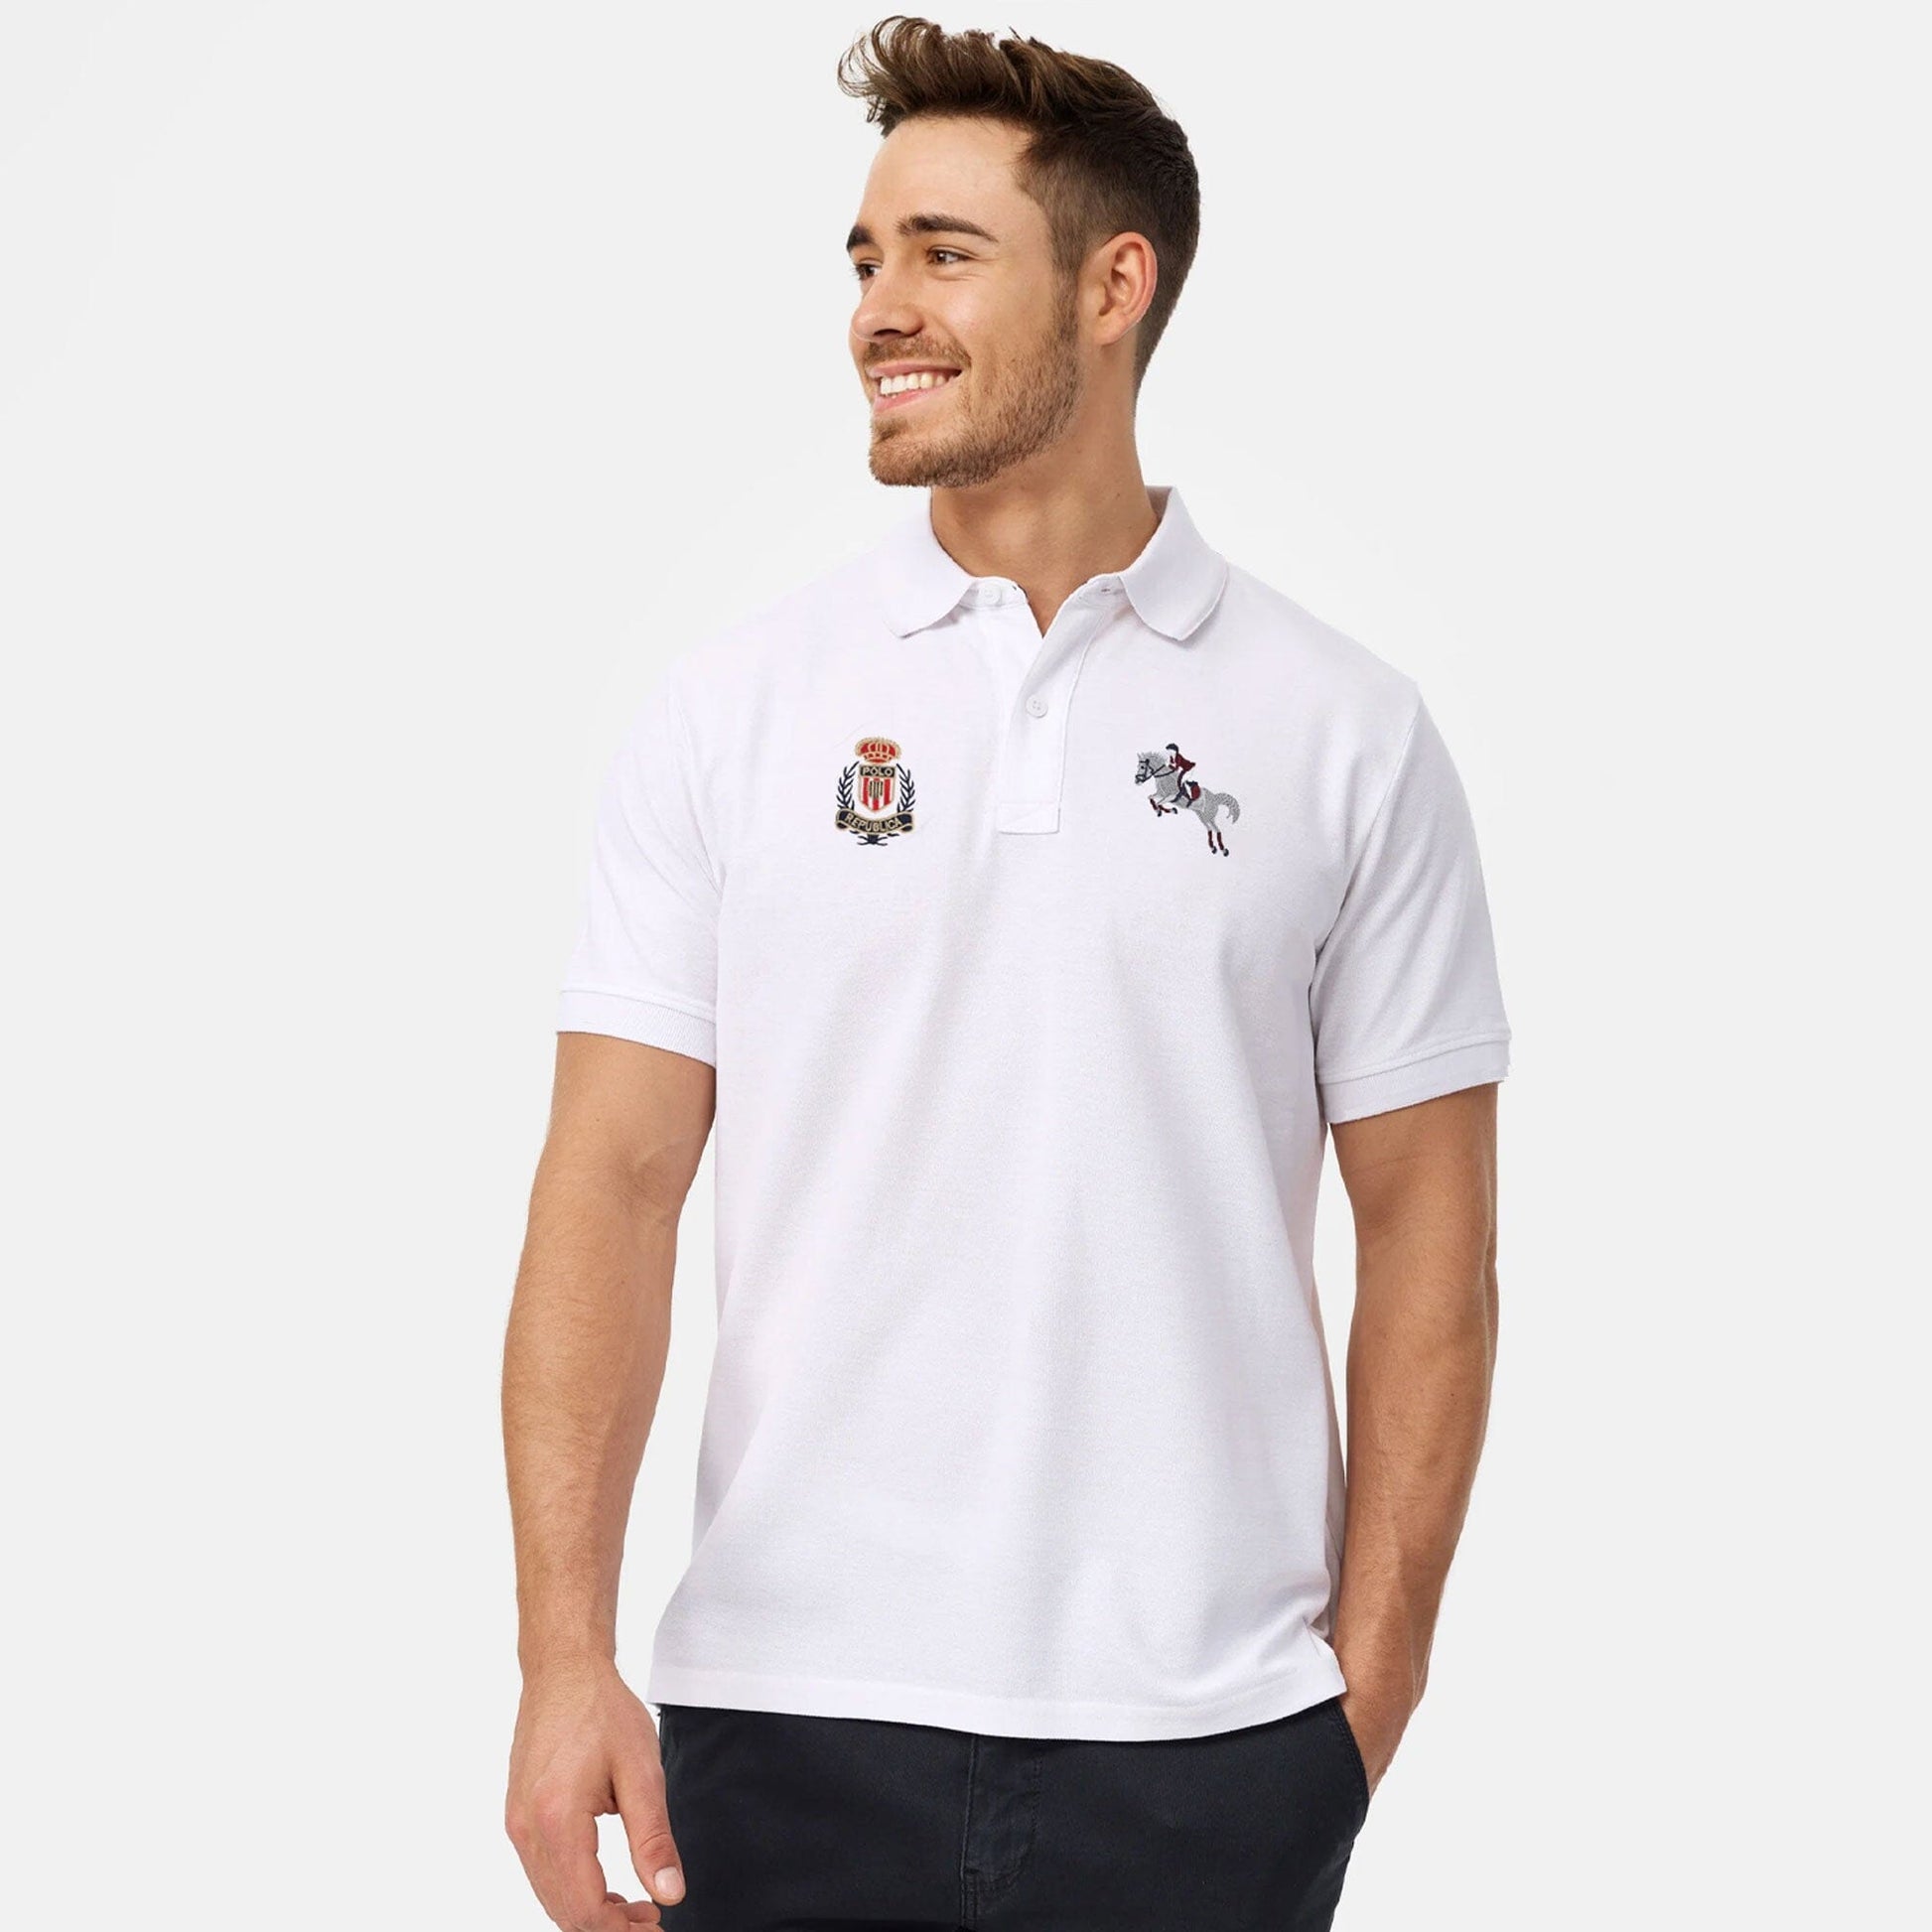 Polo Republica Men's Horse Rider & Polo Crest Embroidered Short Sleeve Polo Shirt Men's Polo Shirt Polo Republica White S 